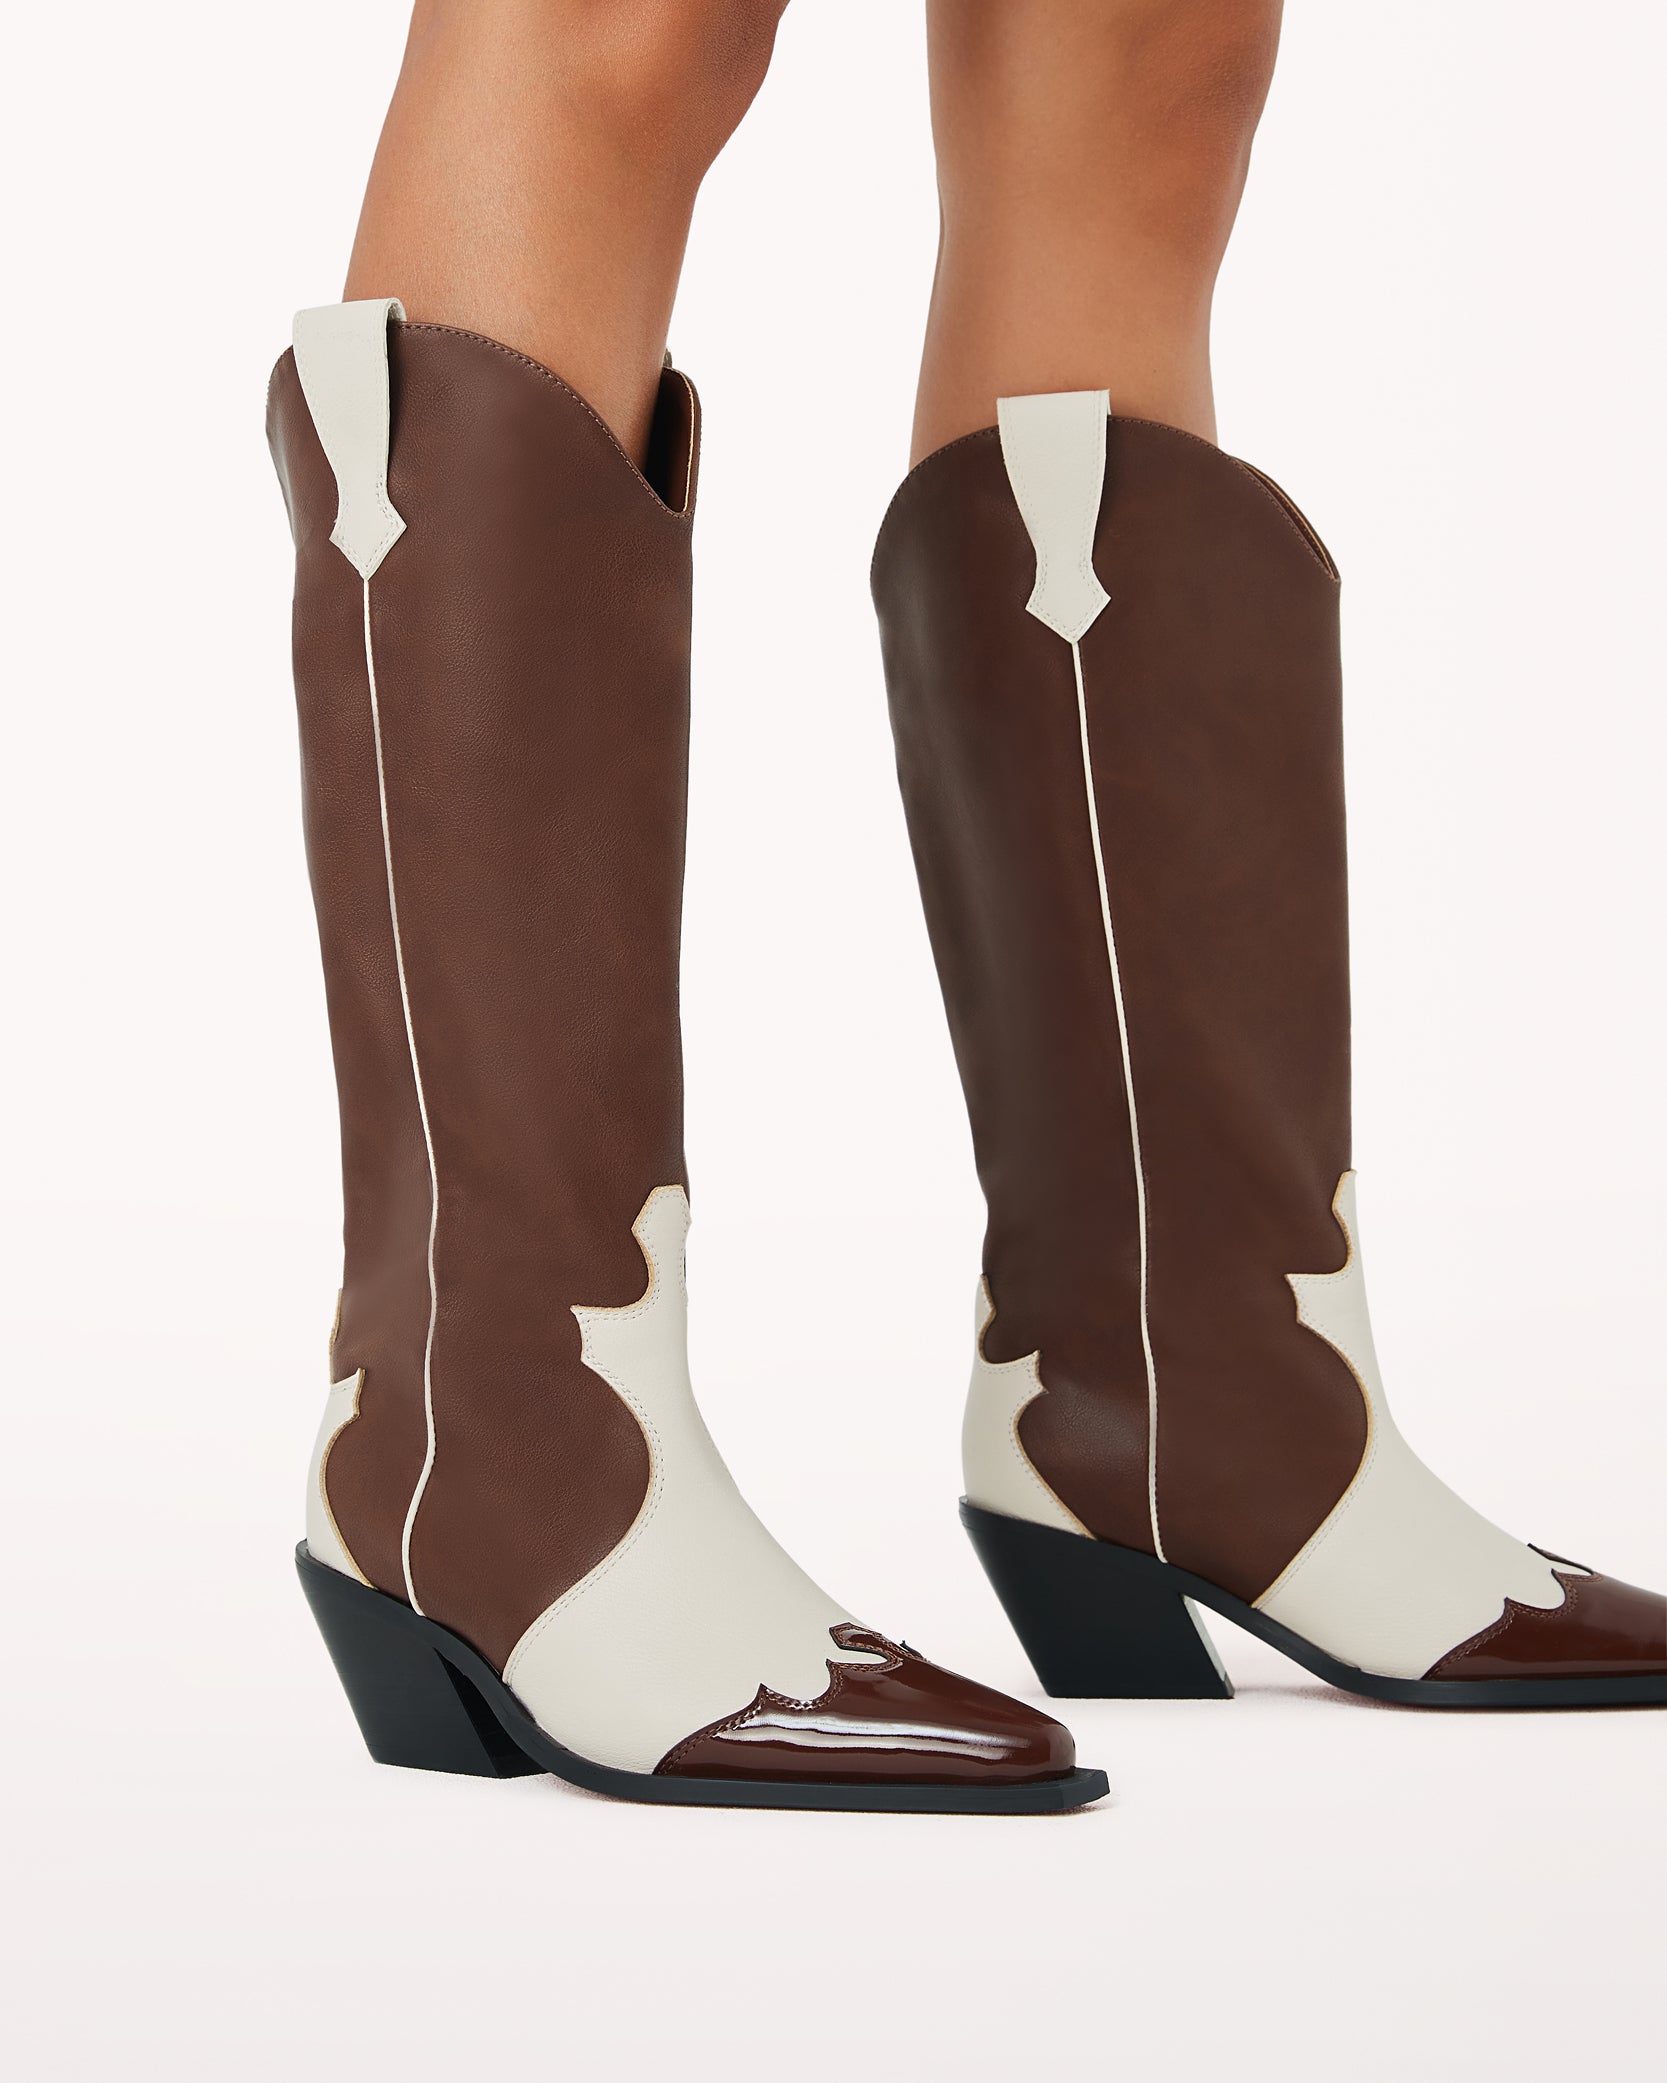 Etta Cowgirl Boots by Billini